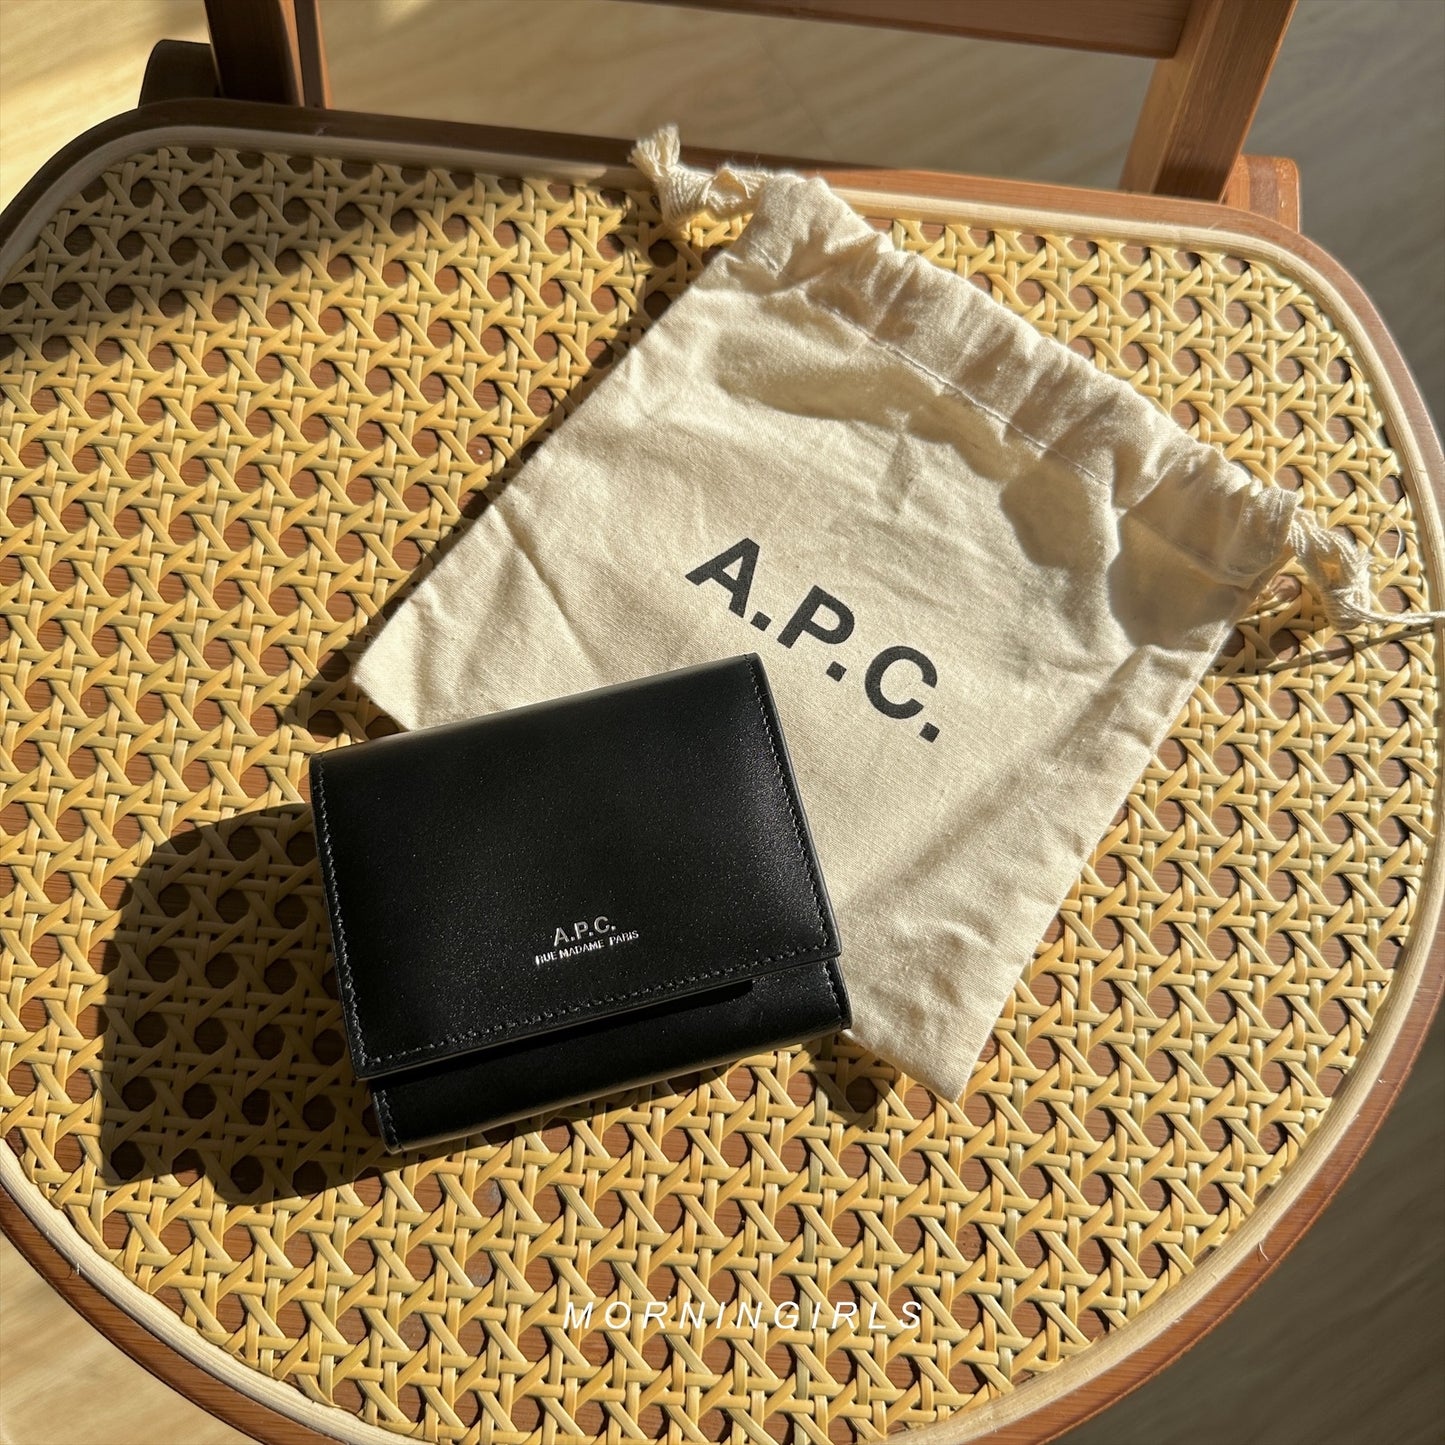 A.P.C. Lois Compact Wallet